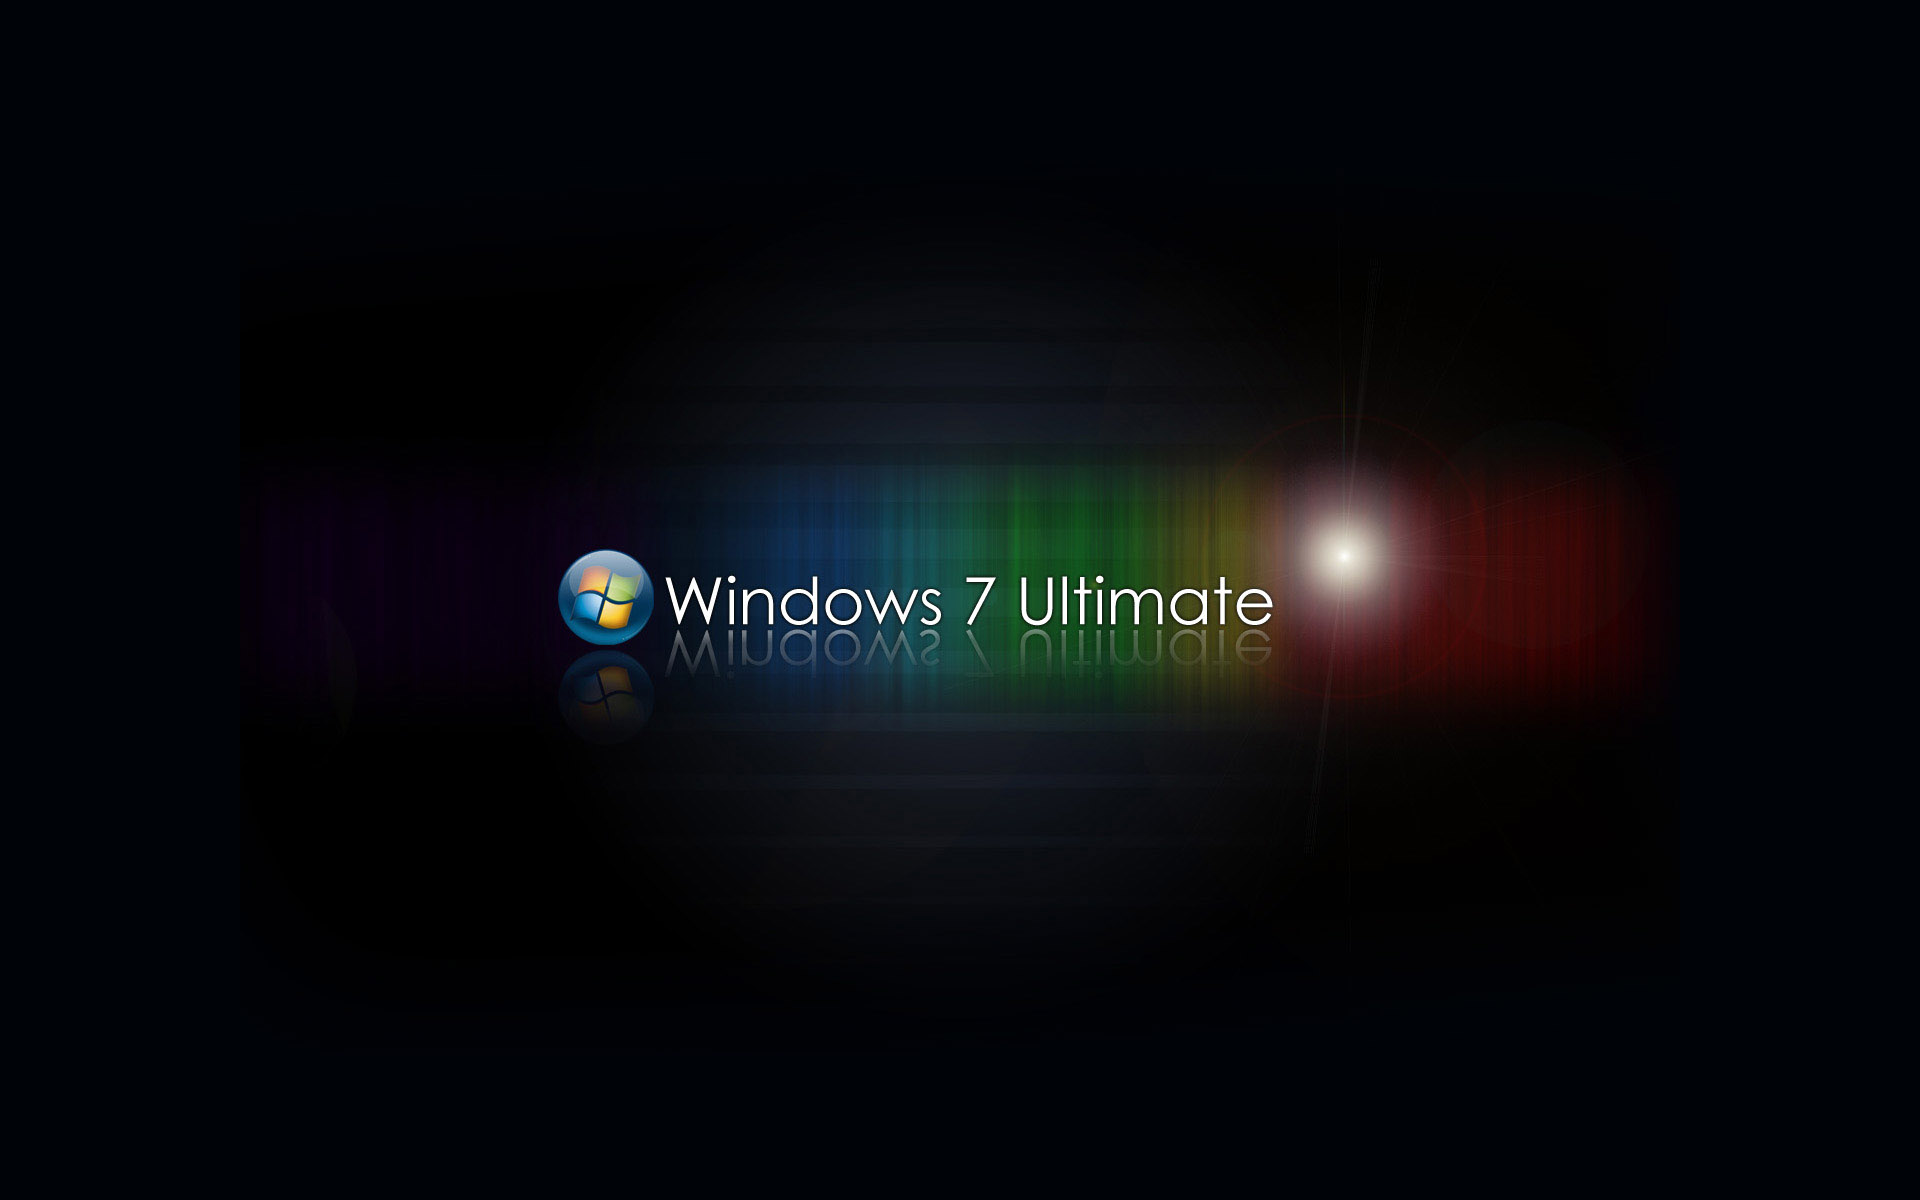 Meilleurs fonds d'écran Windows 7 Ultimate pour l'écran du téléphone